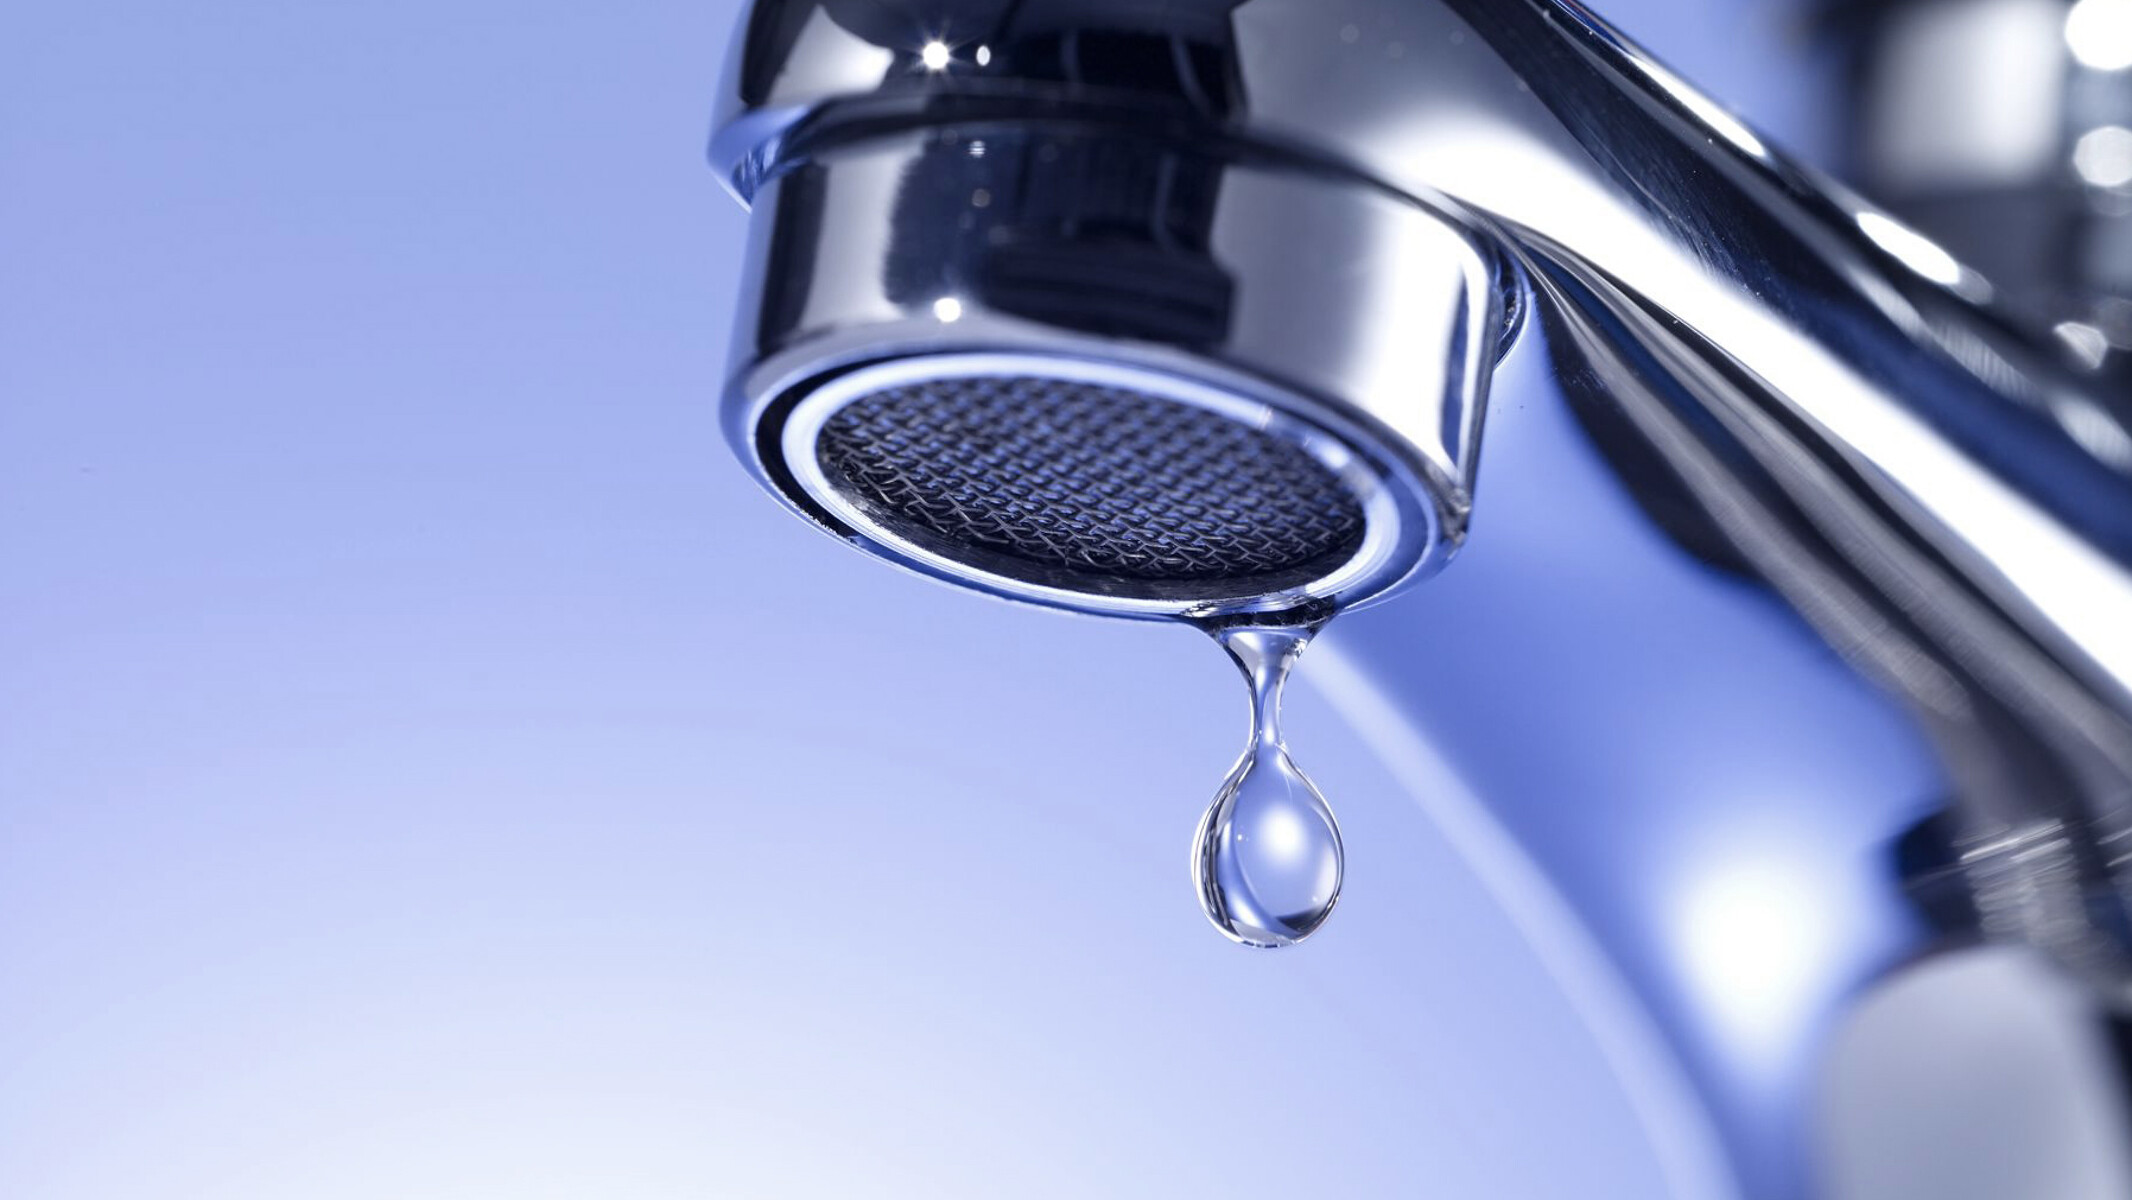 Egy csöpögő vízcsap. A háztartási vízellátástól az összetett nyomásfokozó berendezésekig – vízellátás-technika KSB termékekkel.